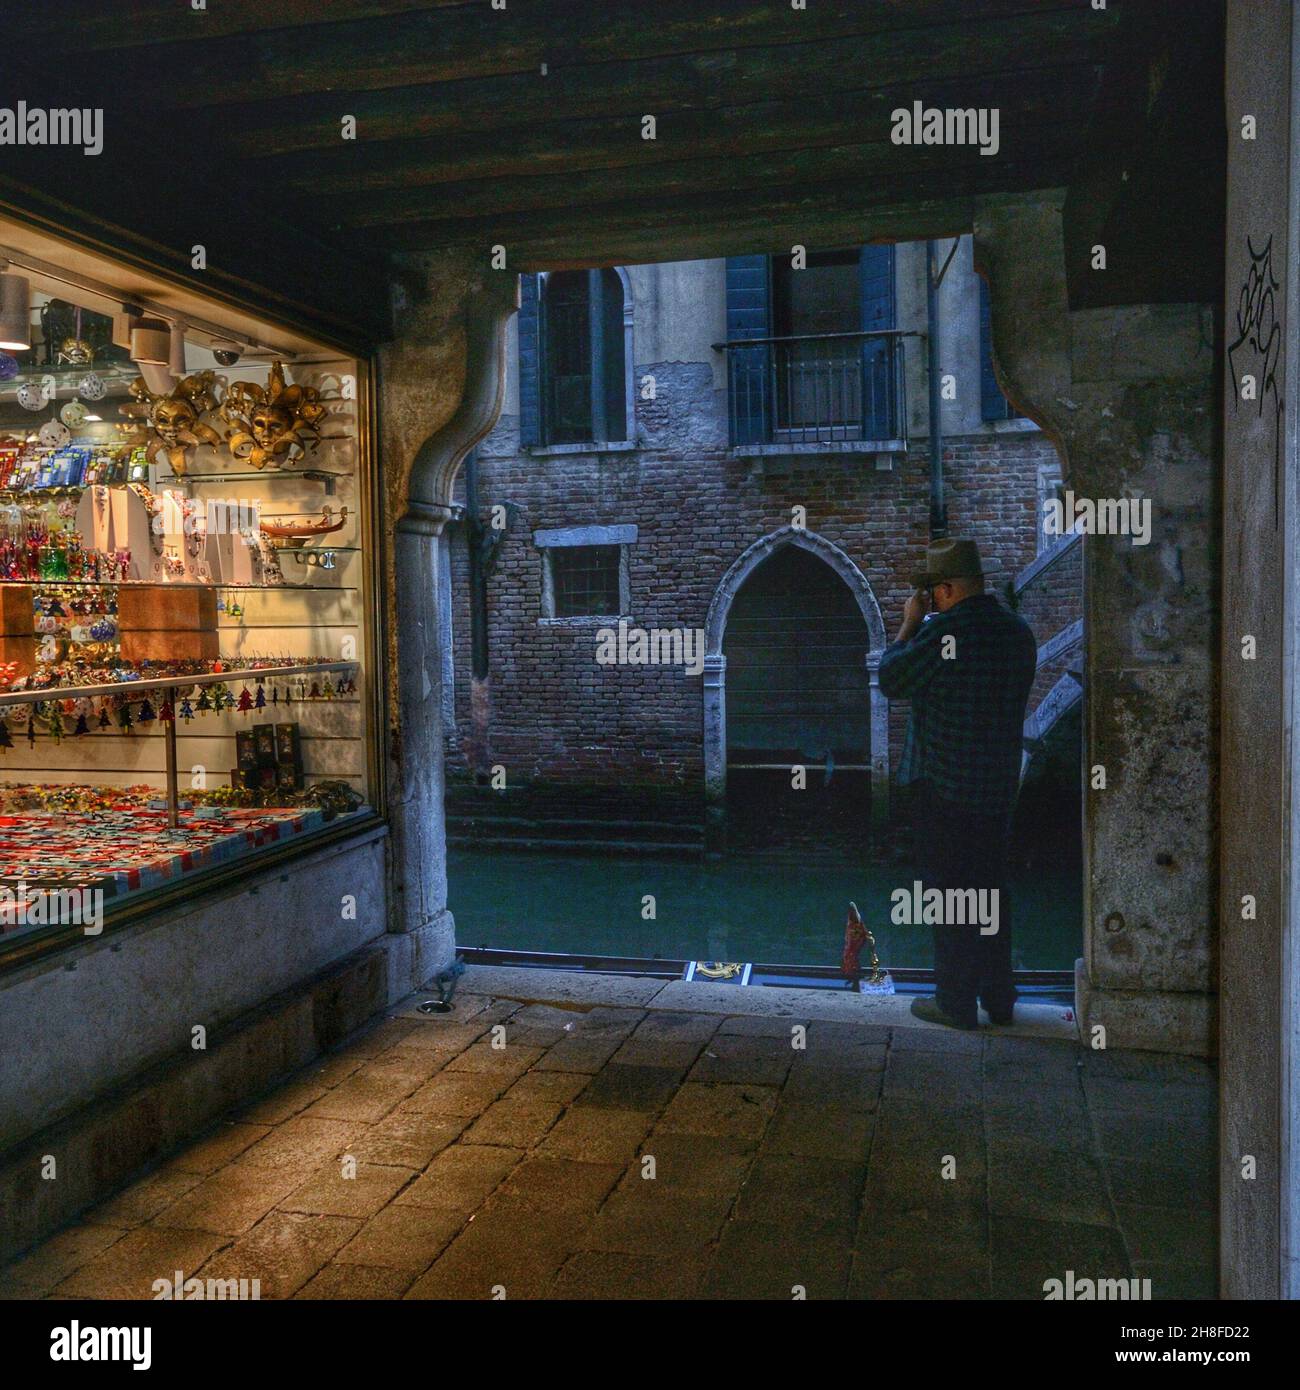 Vue sur une boutique vénitienne typique à proximité d'un canal au crépuscule.Un touriste prend une photo Banque D'Images